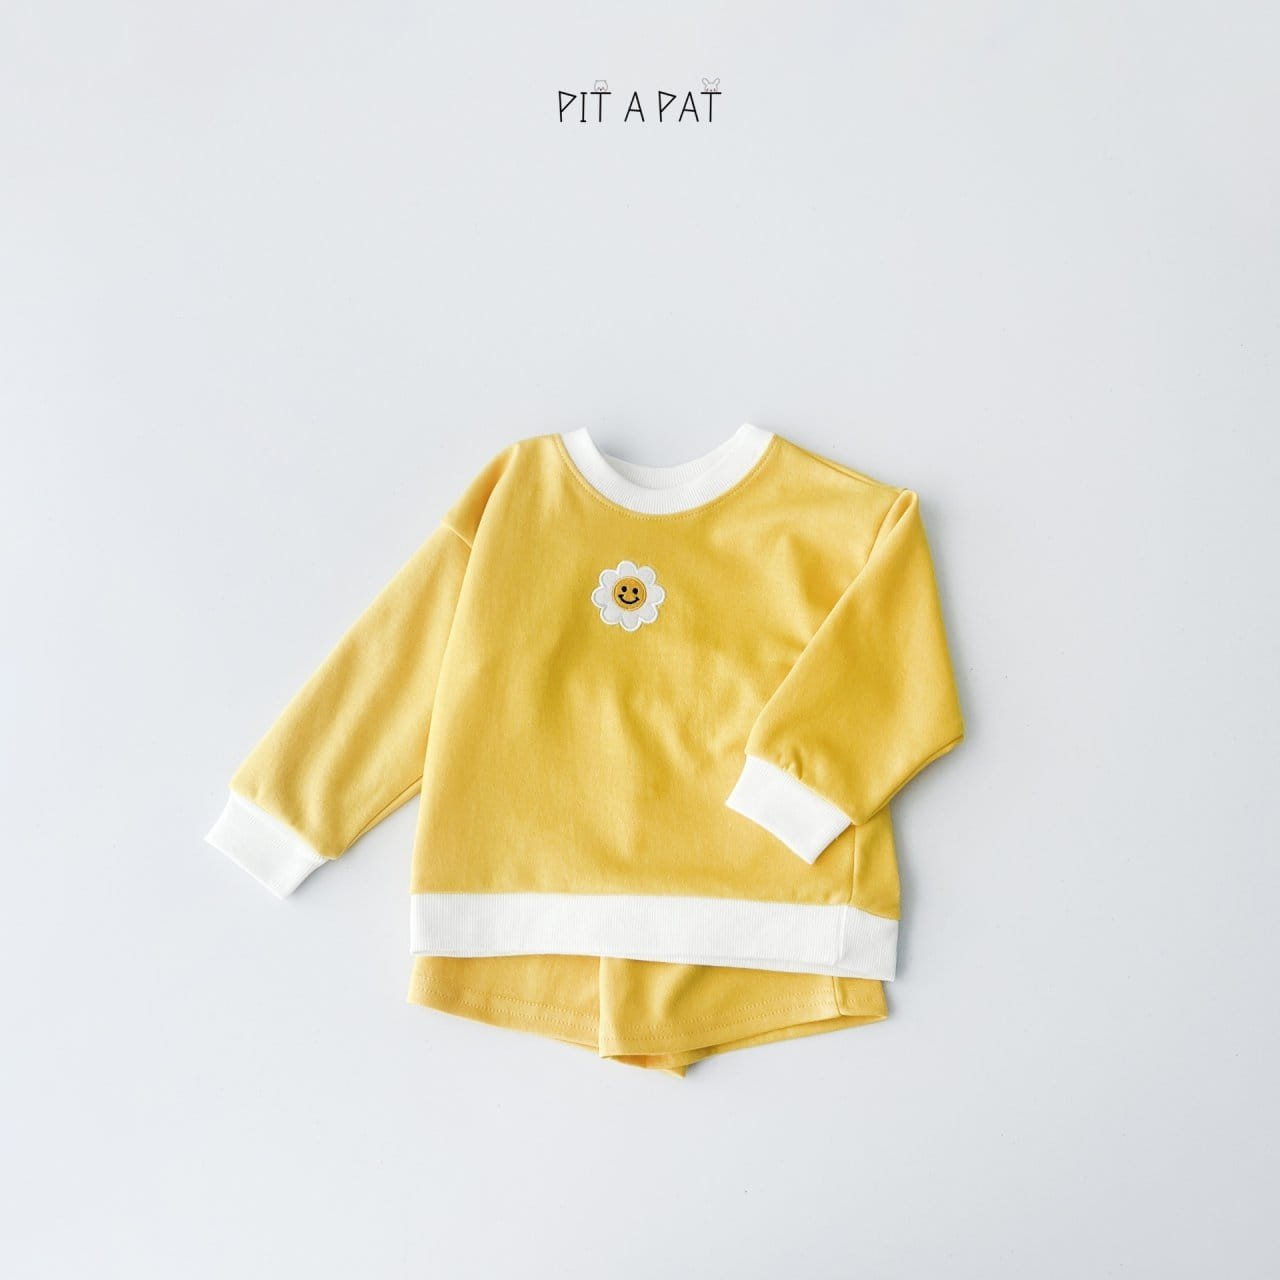 Pitapat - Korean Children Fashion - #littlefashionista - Flower Class Kindergarten Top Bottom Set - 6